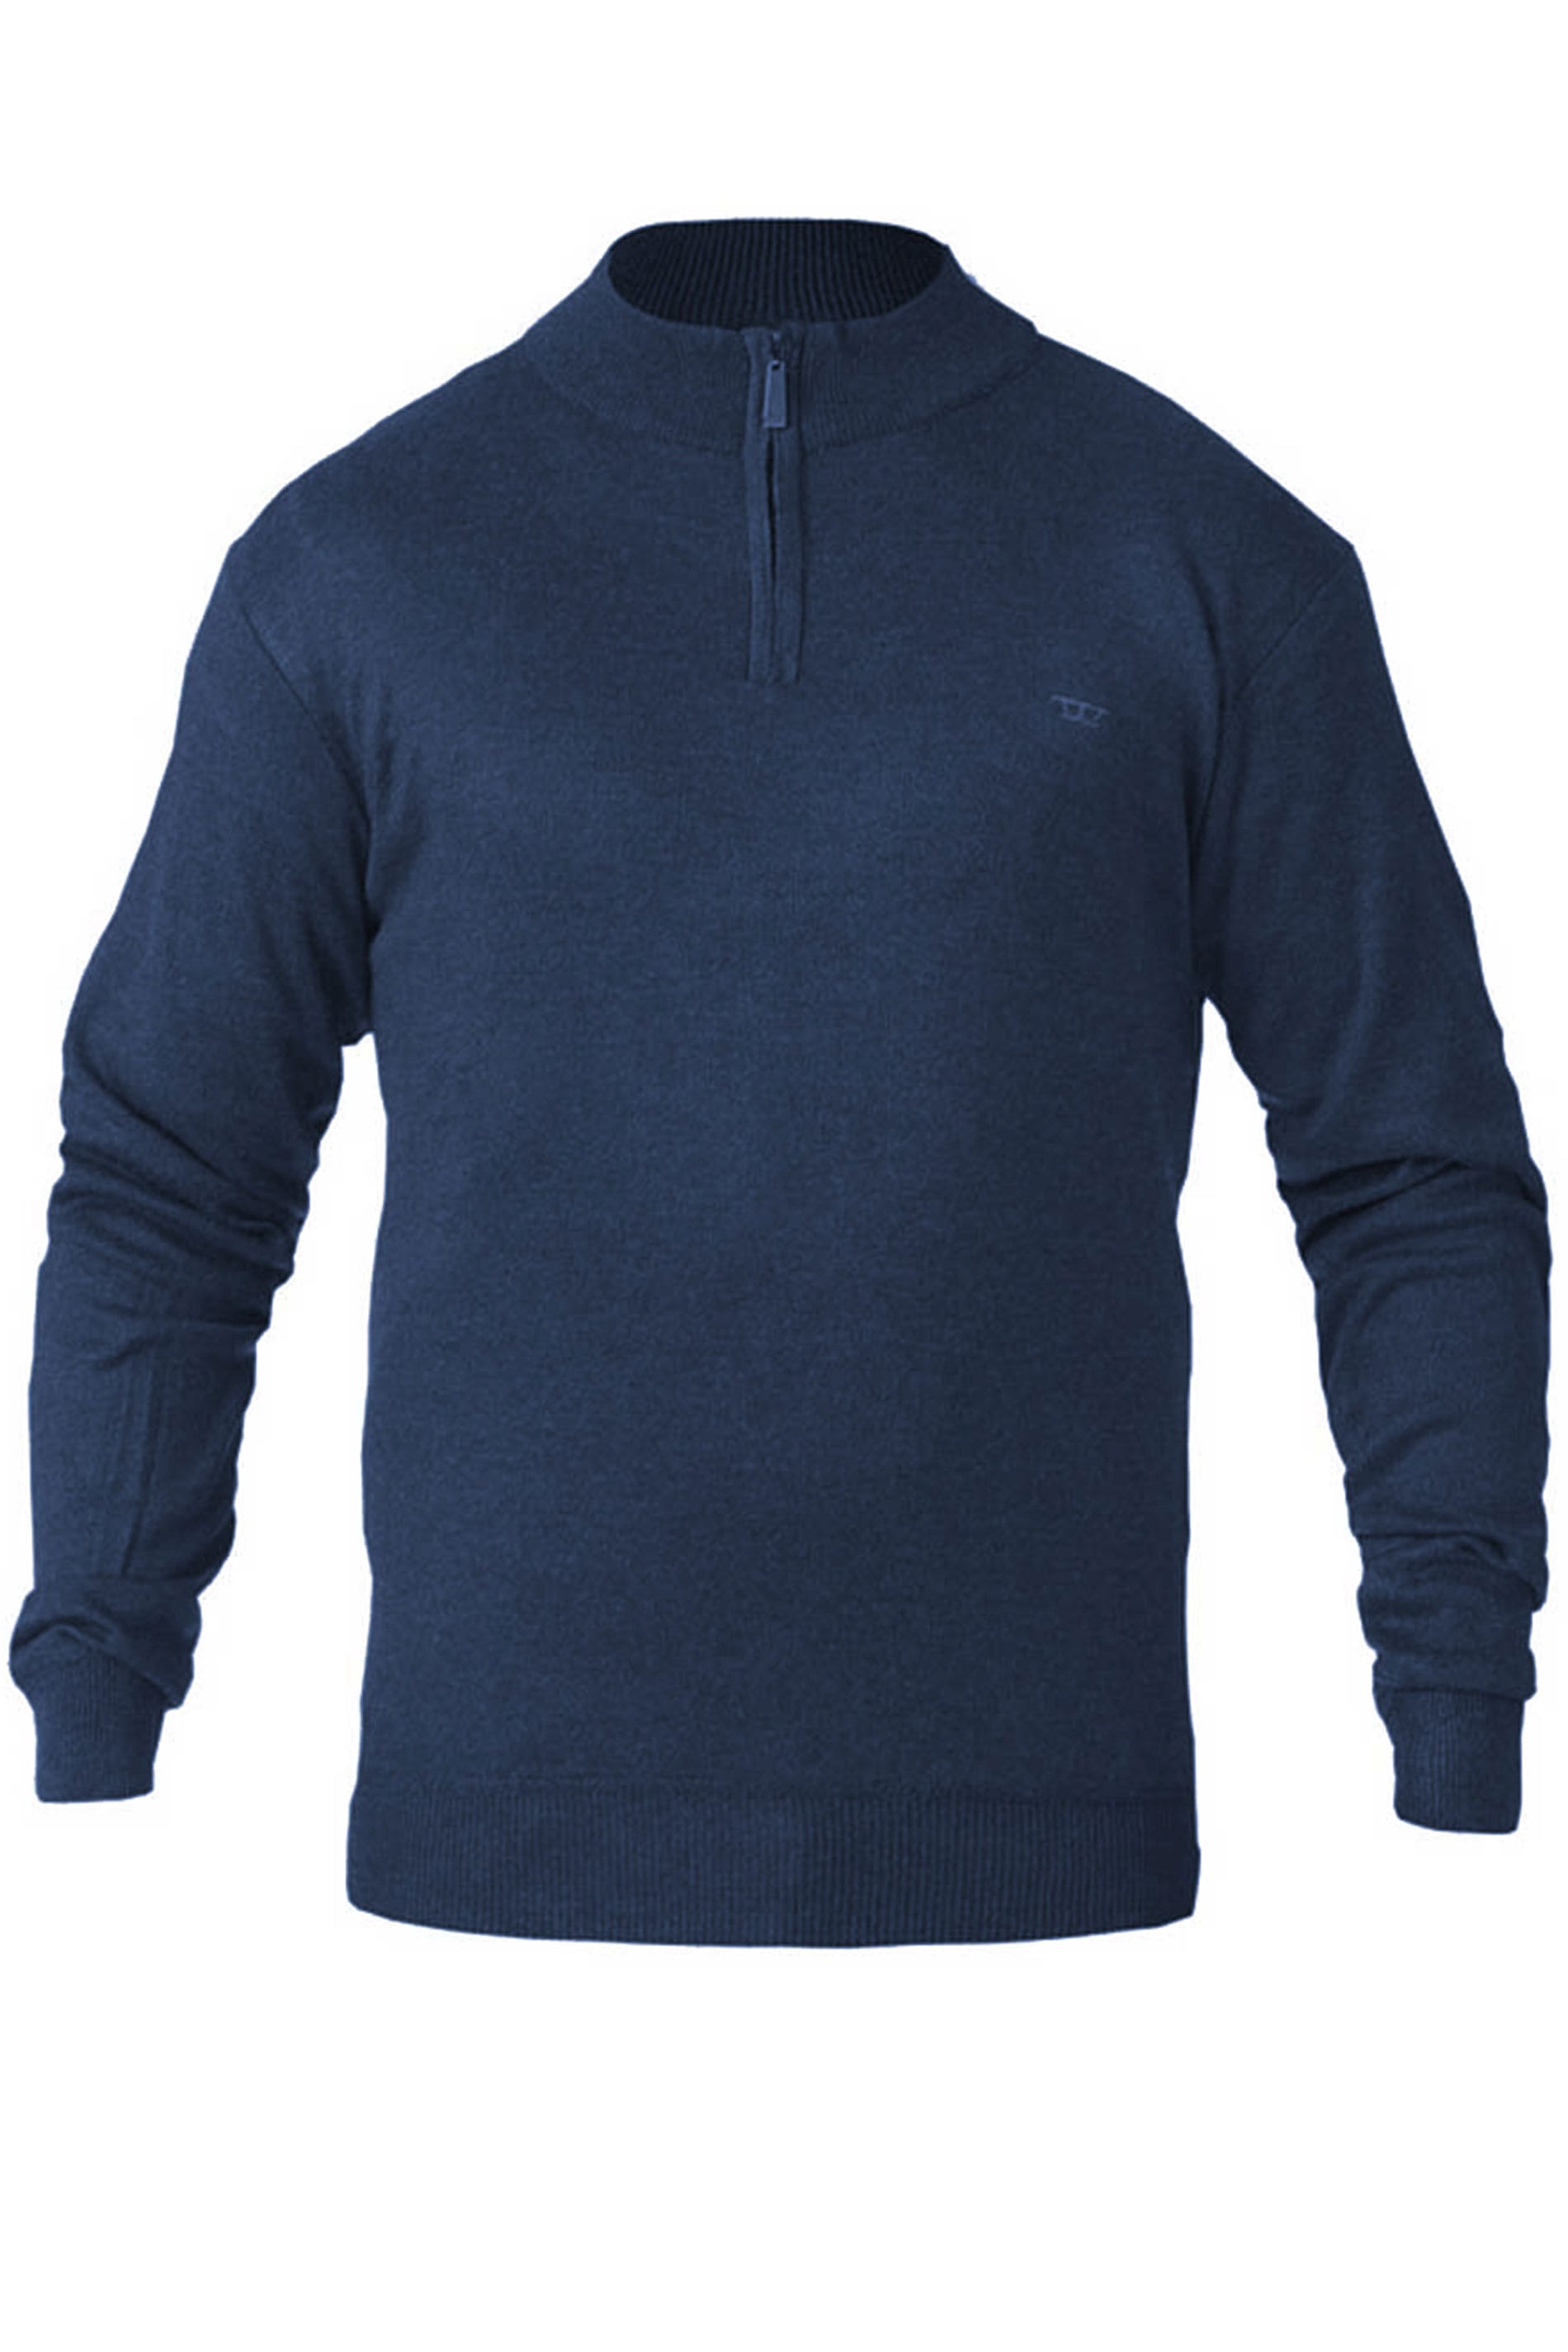 D555 Navy Quarter Zip Sweatshirt | BadRhino